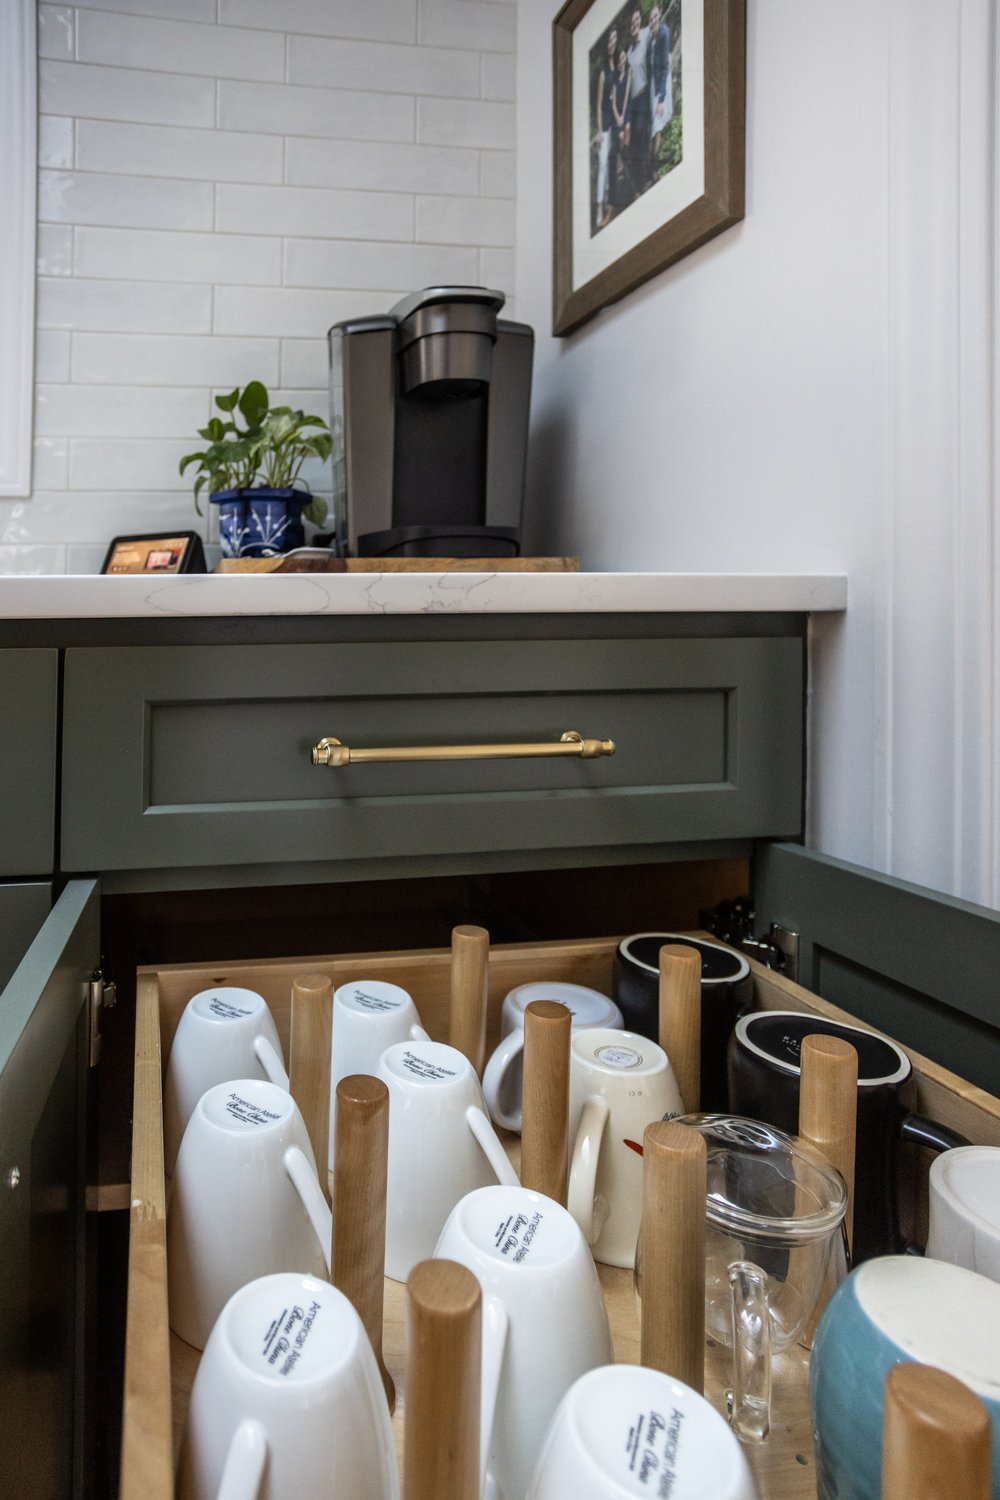 Chef's Kitchen Design: Coffee Bar Storage